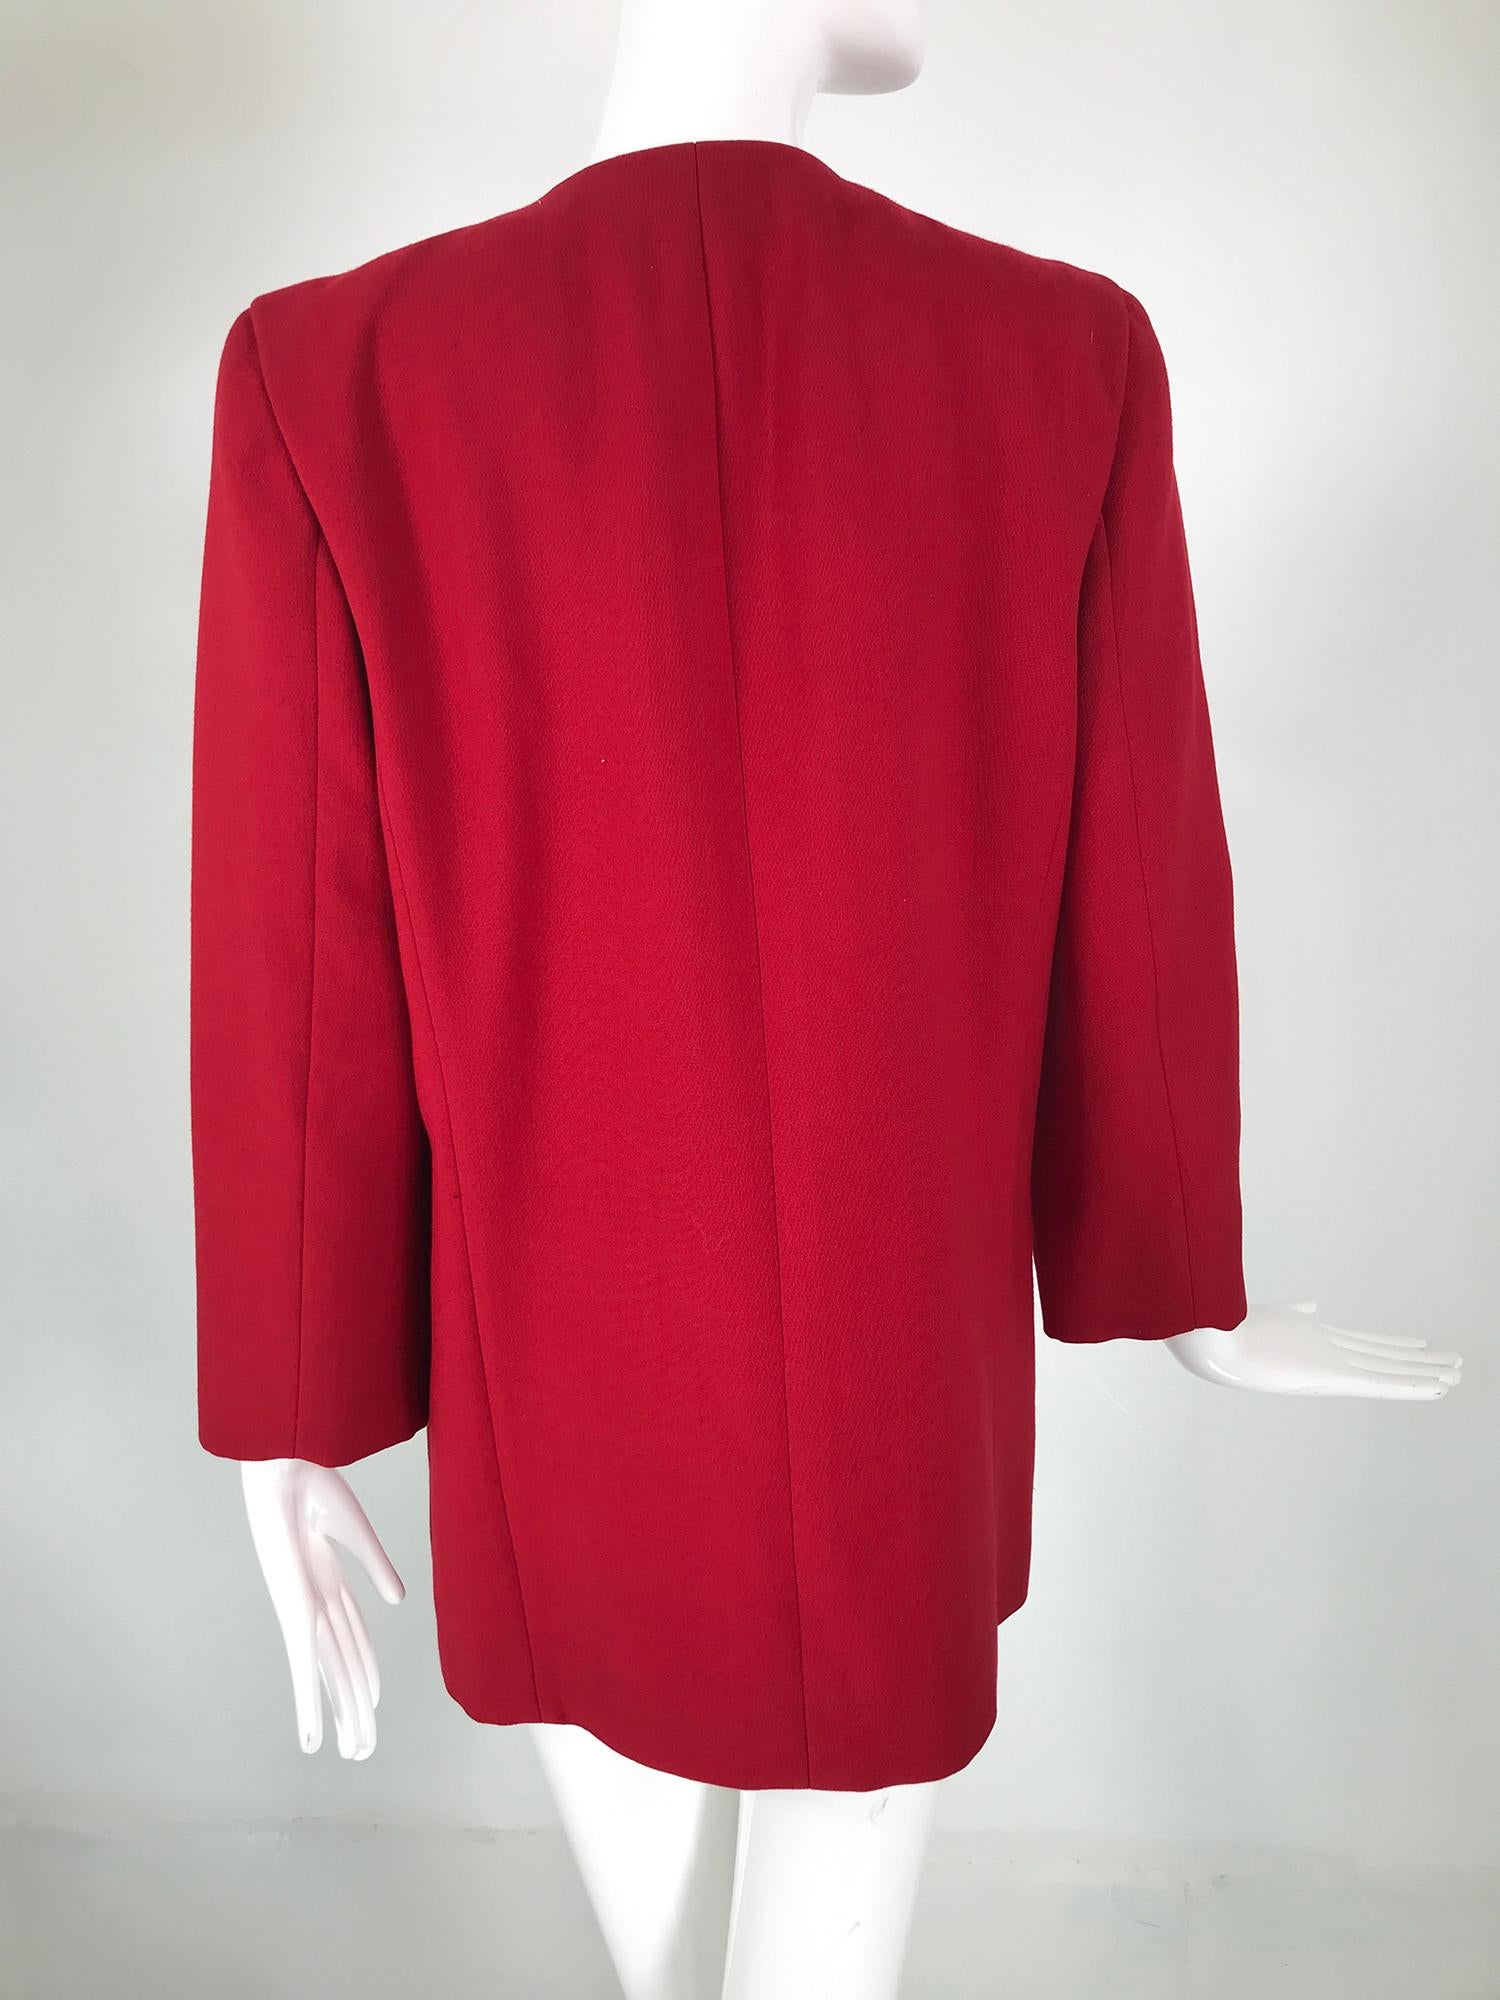 Women's Boutique Pierre Cardin Paris Red Wool Space Age Jacket 1960s Rare Label